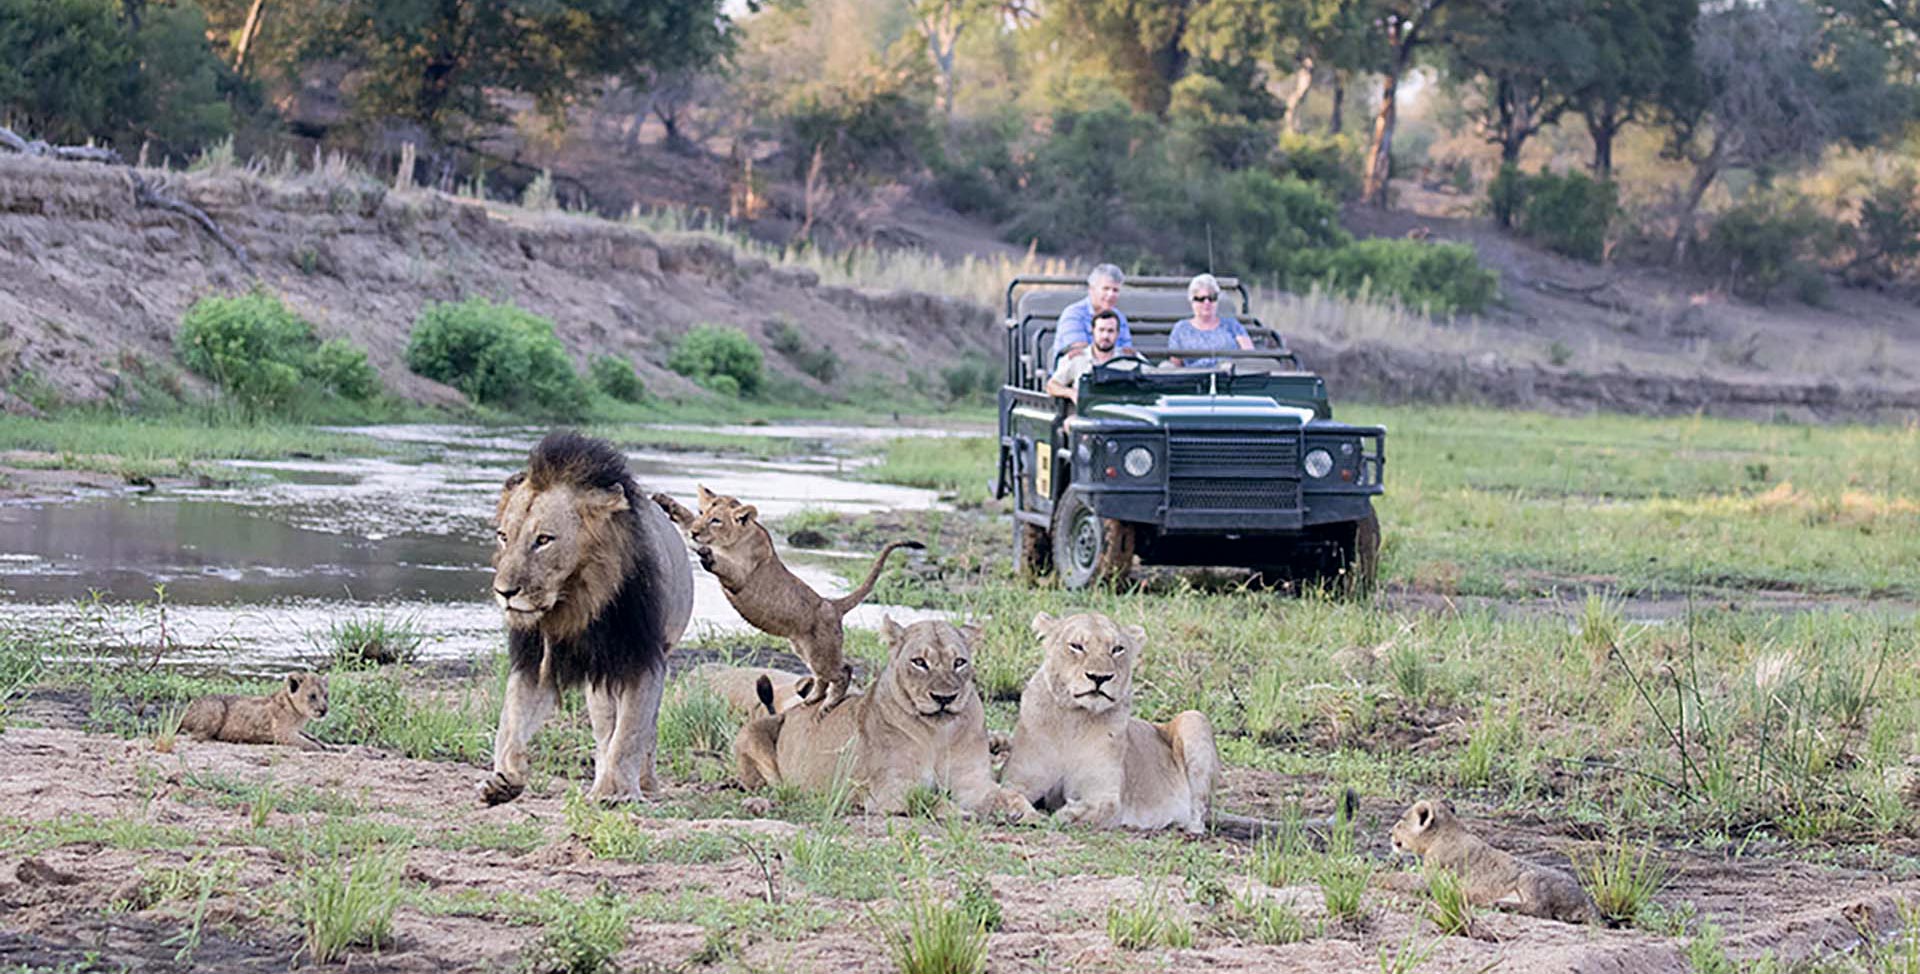 jeep vicino ad una famiglia di leoni